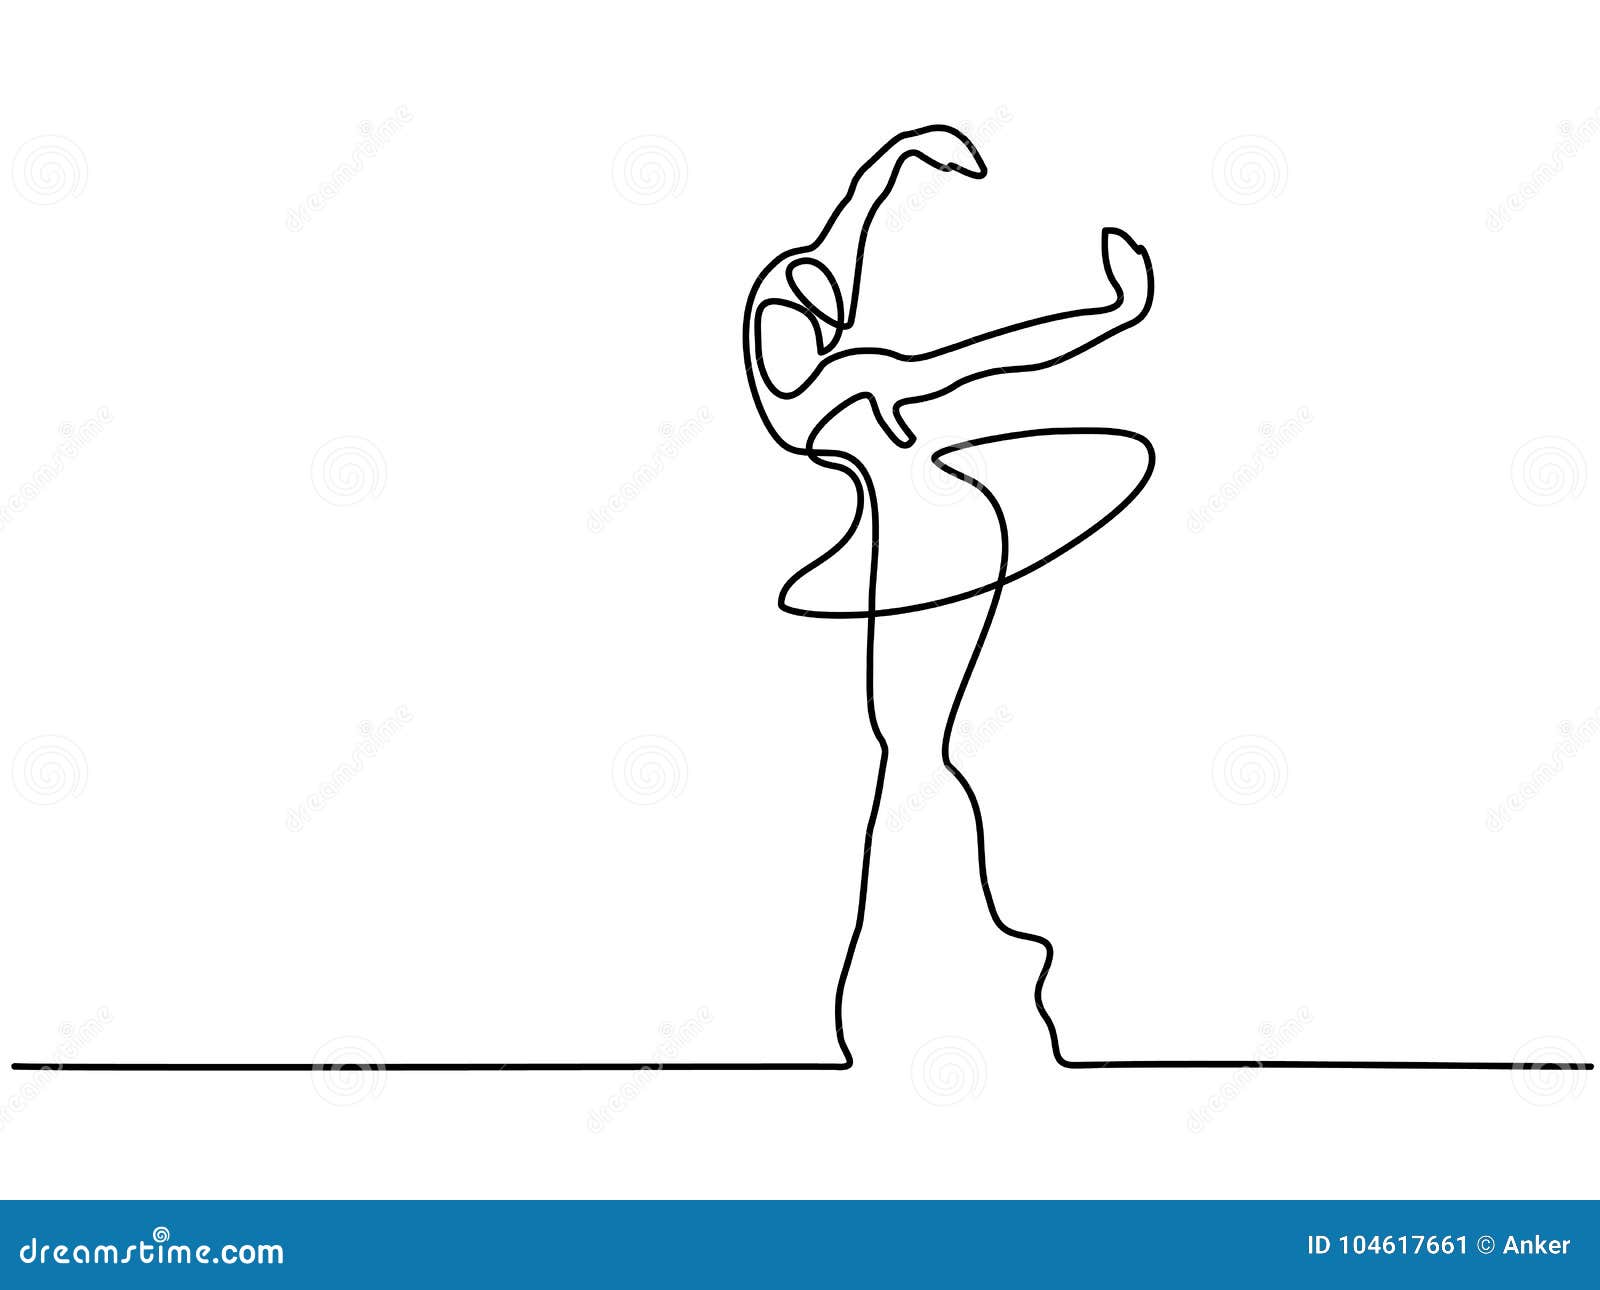 女性跳芭蕾舞者 库存照片. 图片 包括有 年轻, 空白, 匪盗, 妇女, 执行者, 女性, 执行, 芭蕾舞短裙 - 34201252